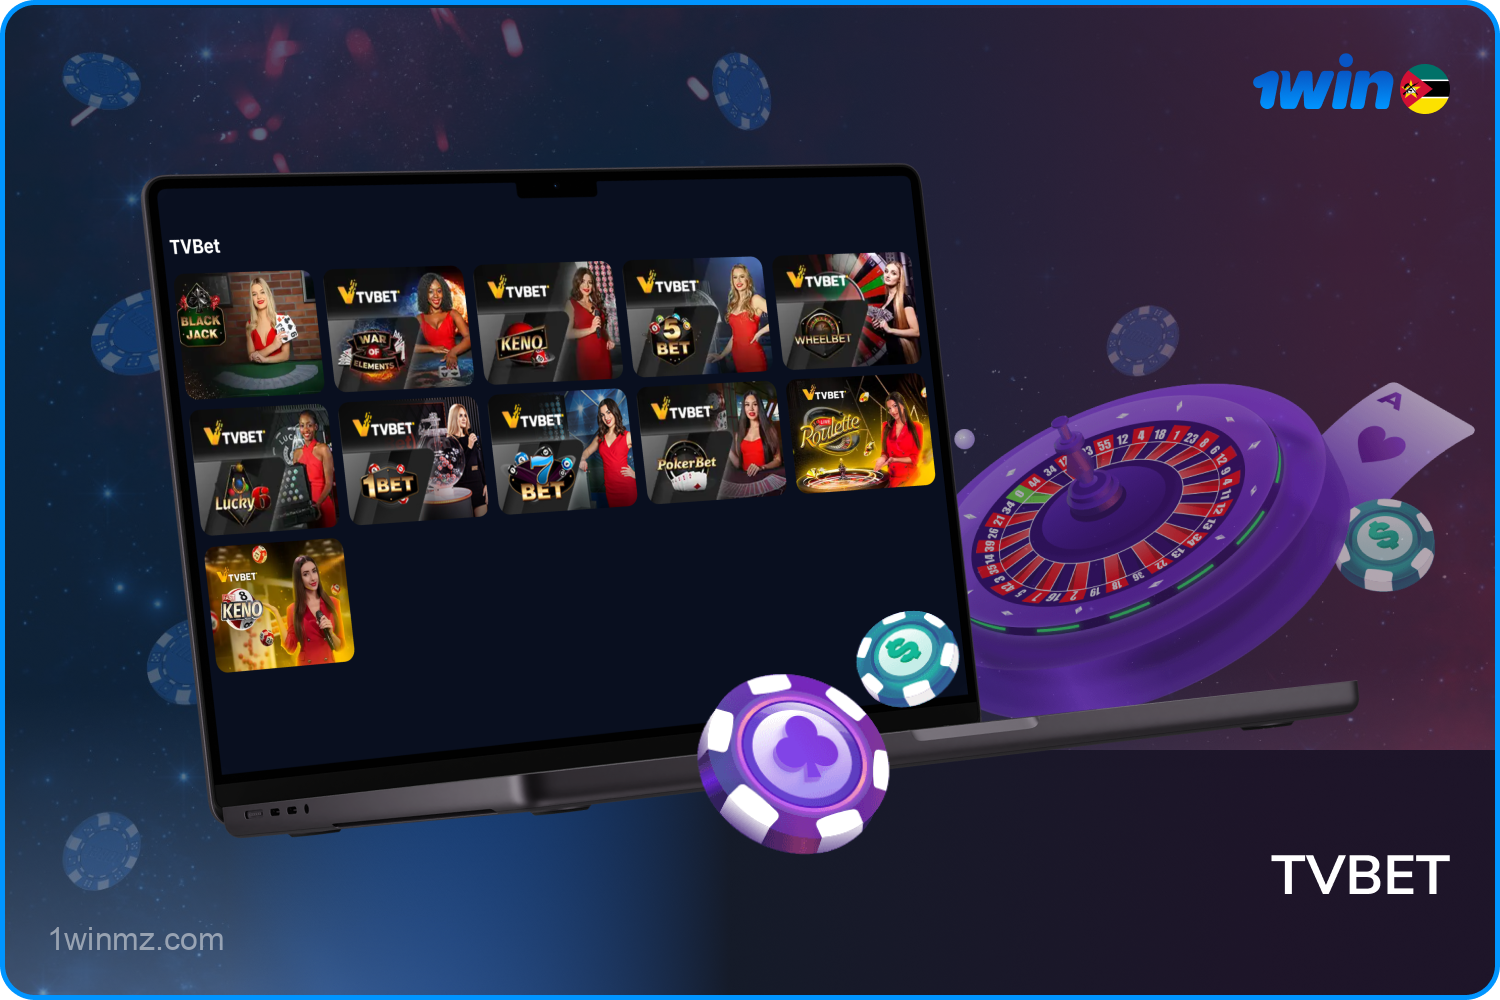 Os populares Jogos de Mesa e Jogos de Show da TVBET estão disponíveis para jogadores moçambicanos na plataforma 1win